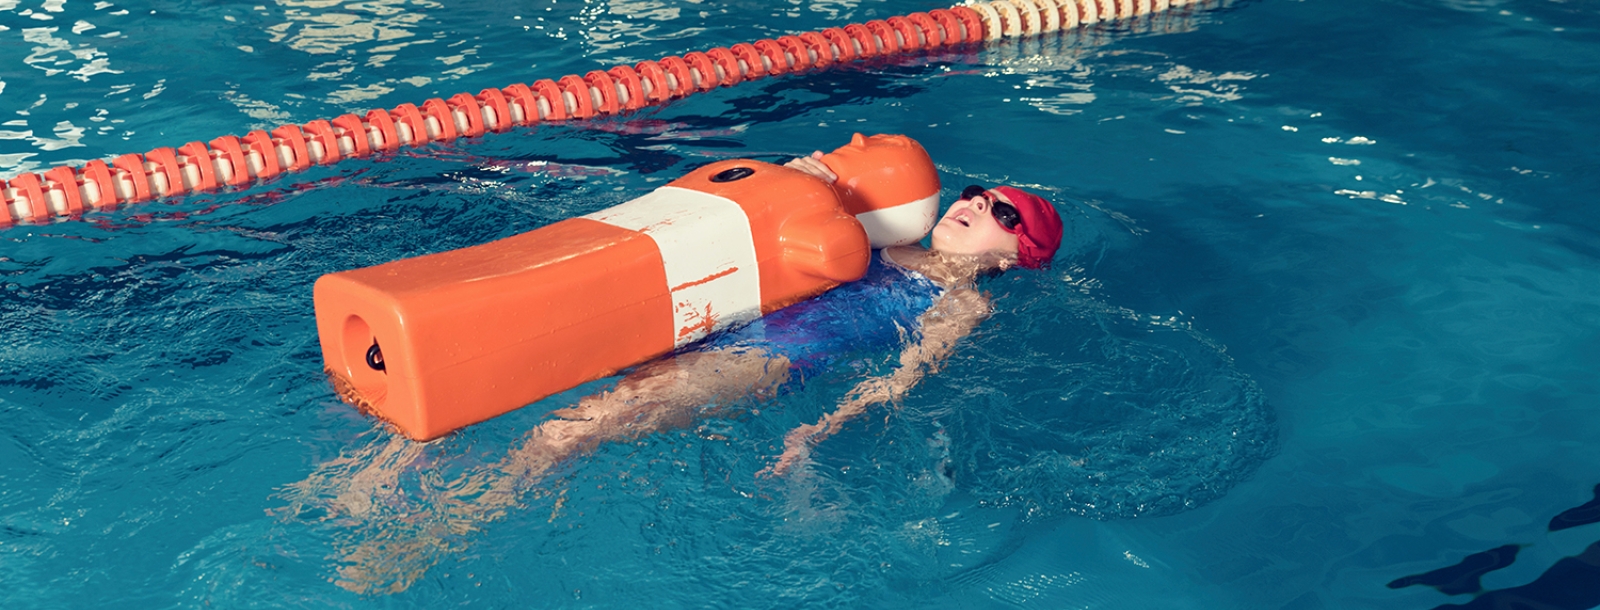 Meisje zwemt met pop in het zwembad